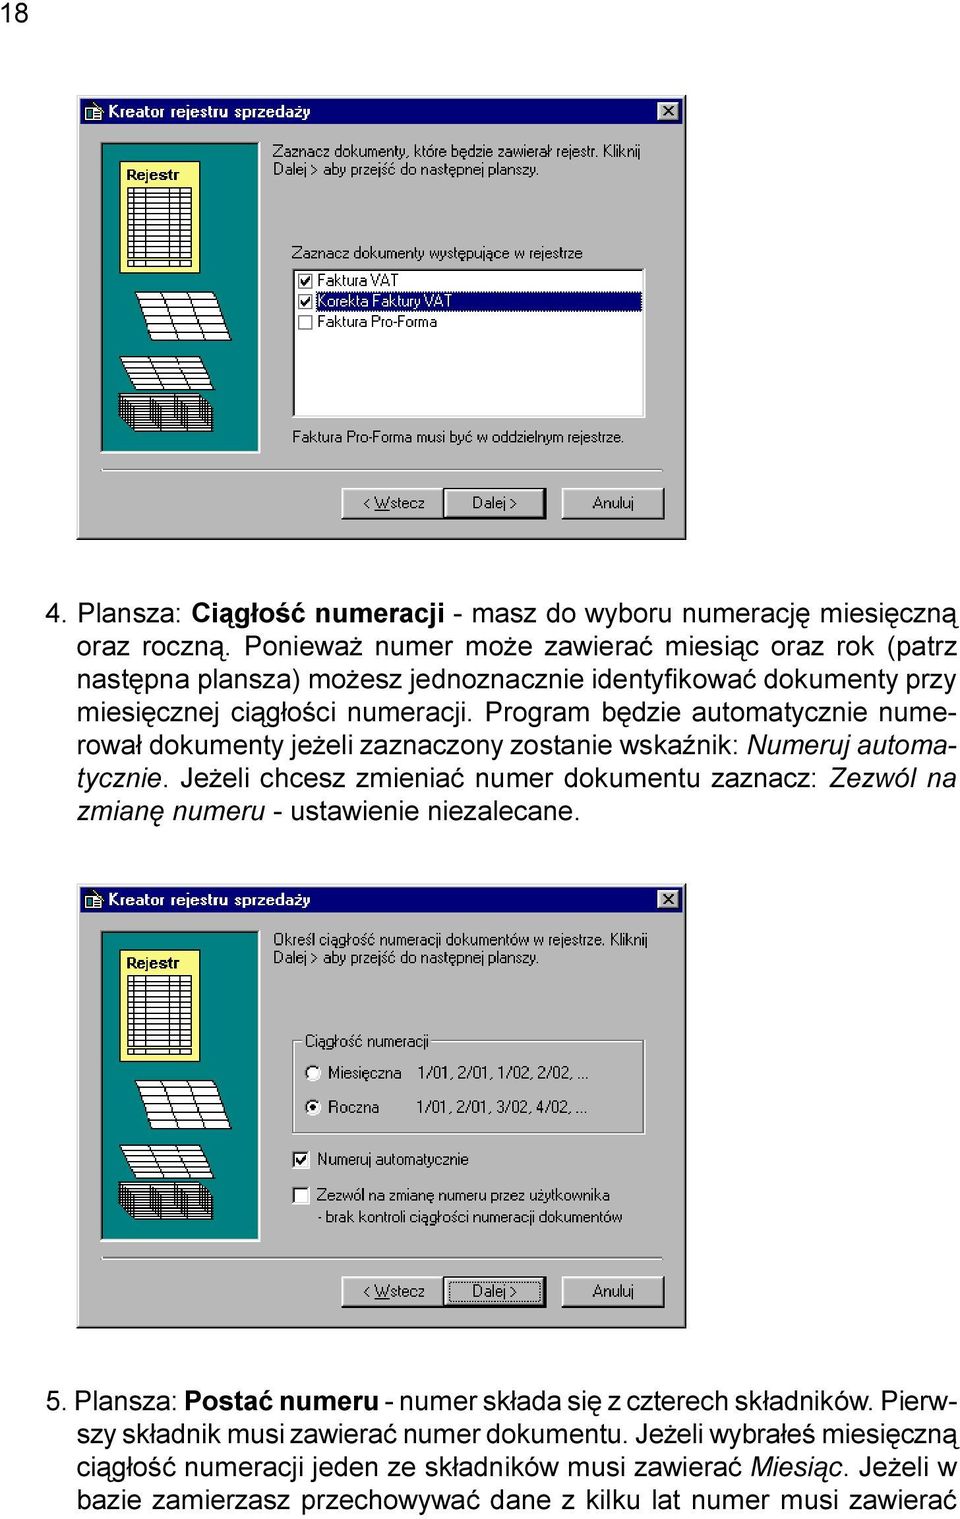 Program bêdzie automatycznie numerowa³ dokumenty je eli zaznaczony zostanie wskaÿnik: Numeruj automatycznie.